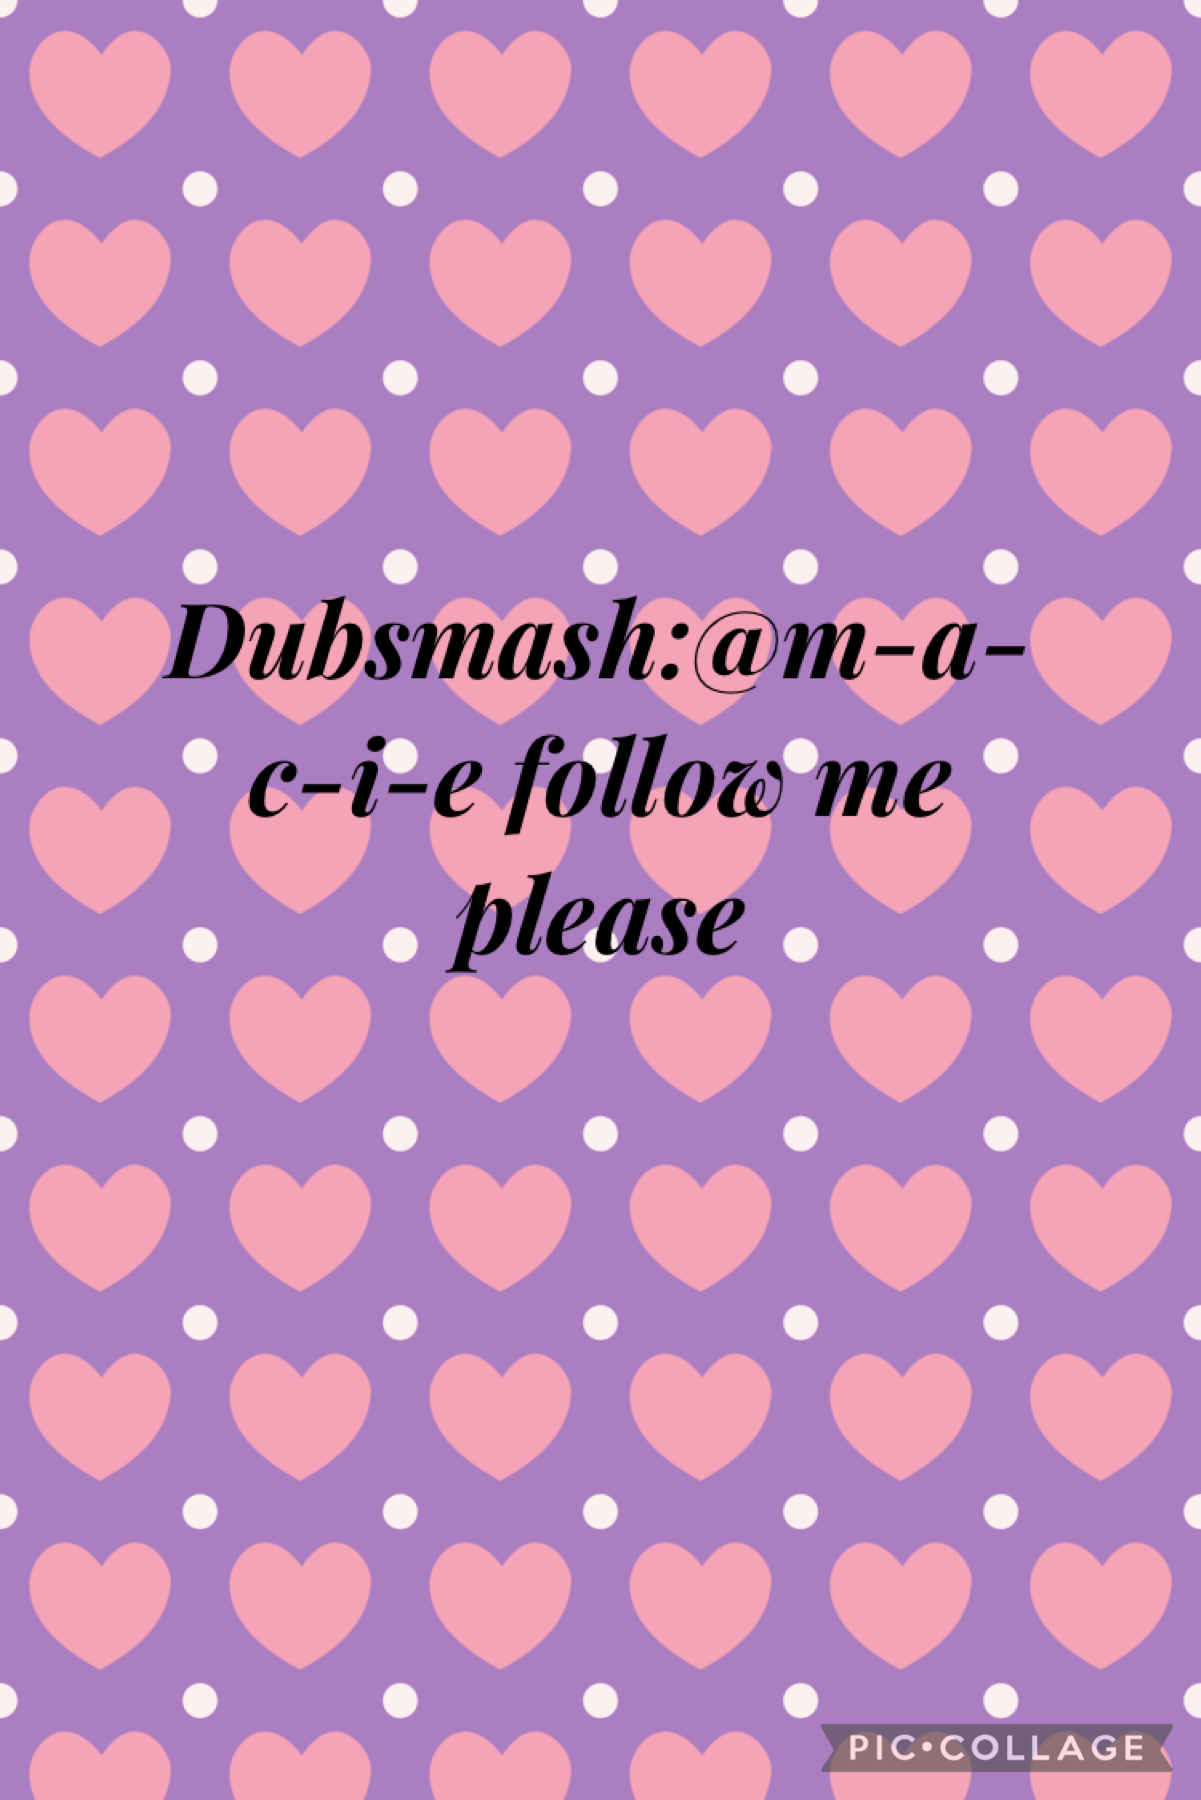 Follow me on Dubsmash at @m-a-c-i-e